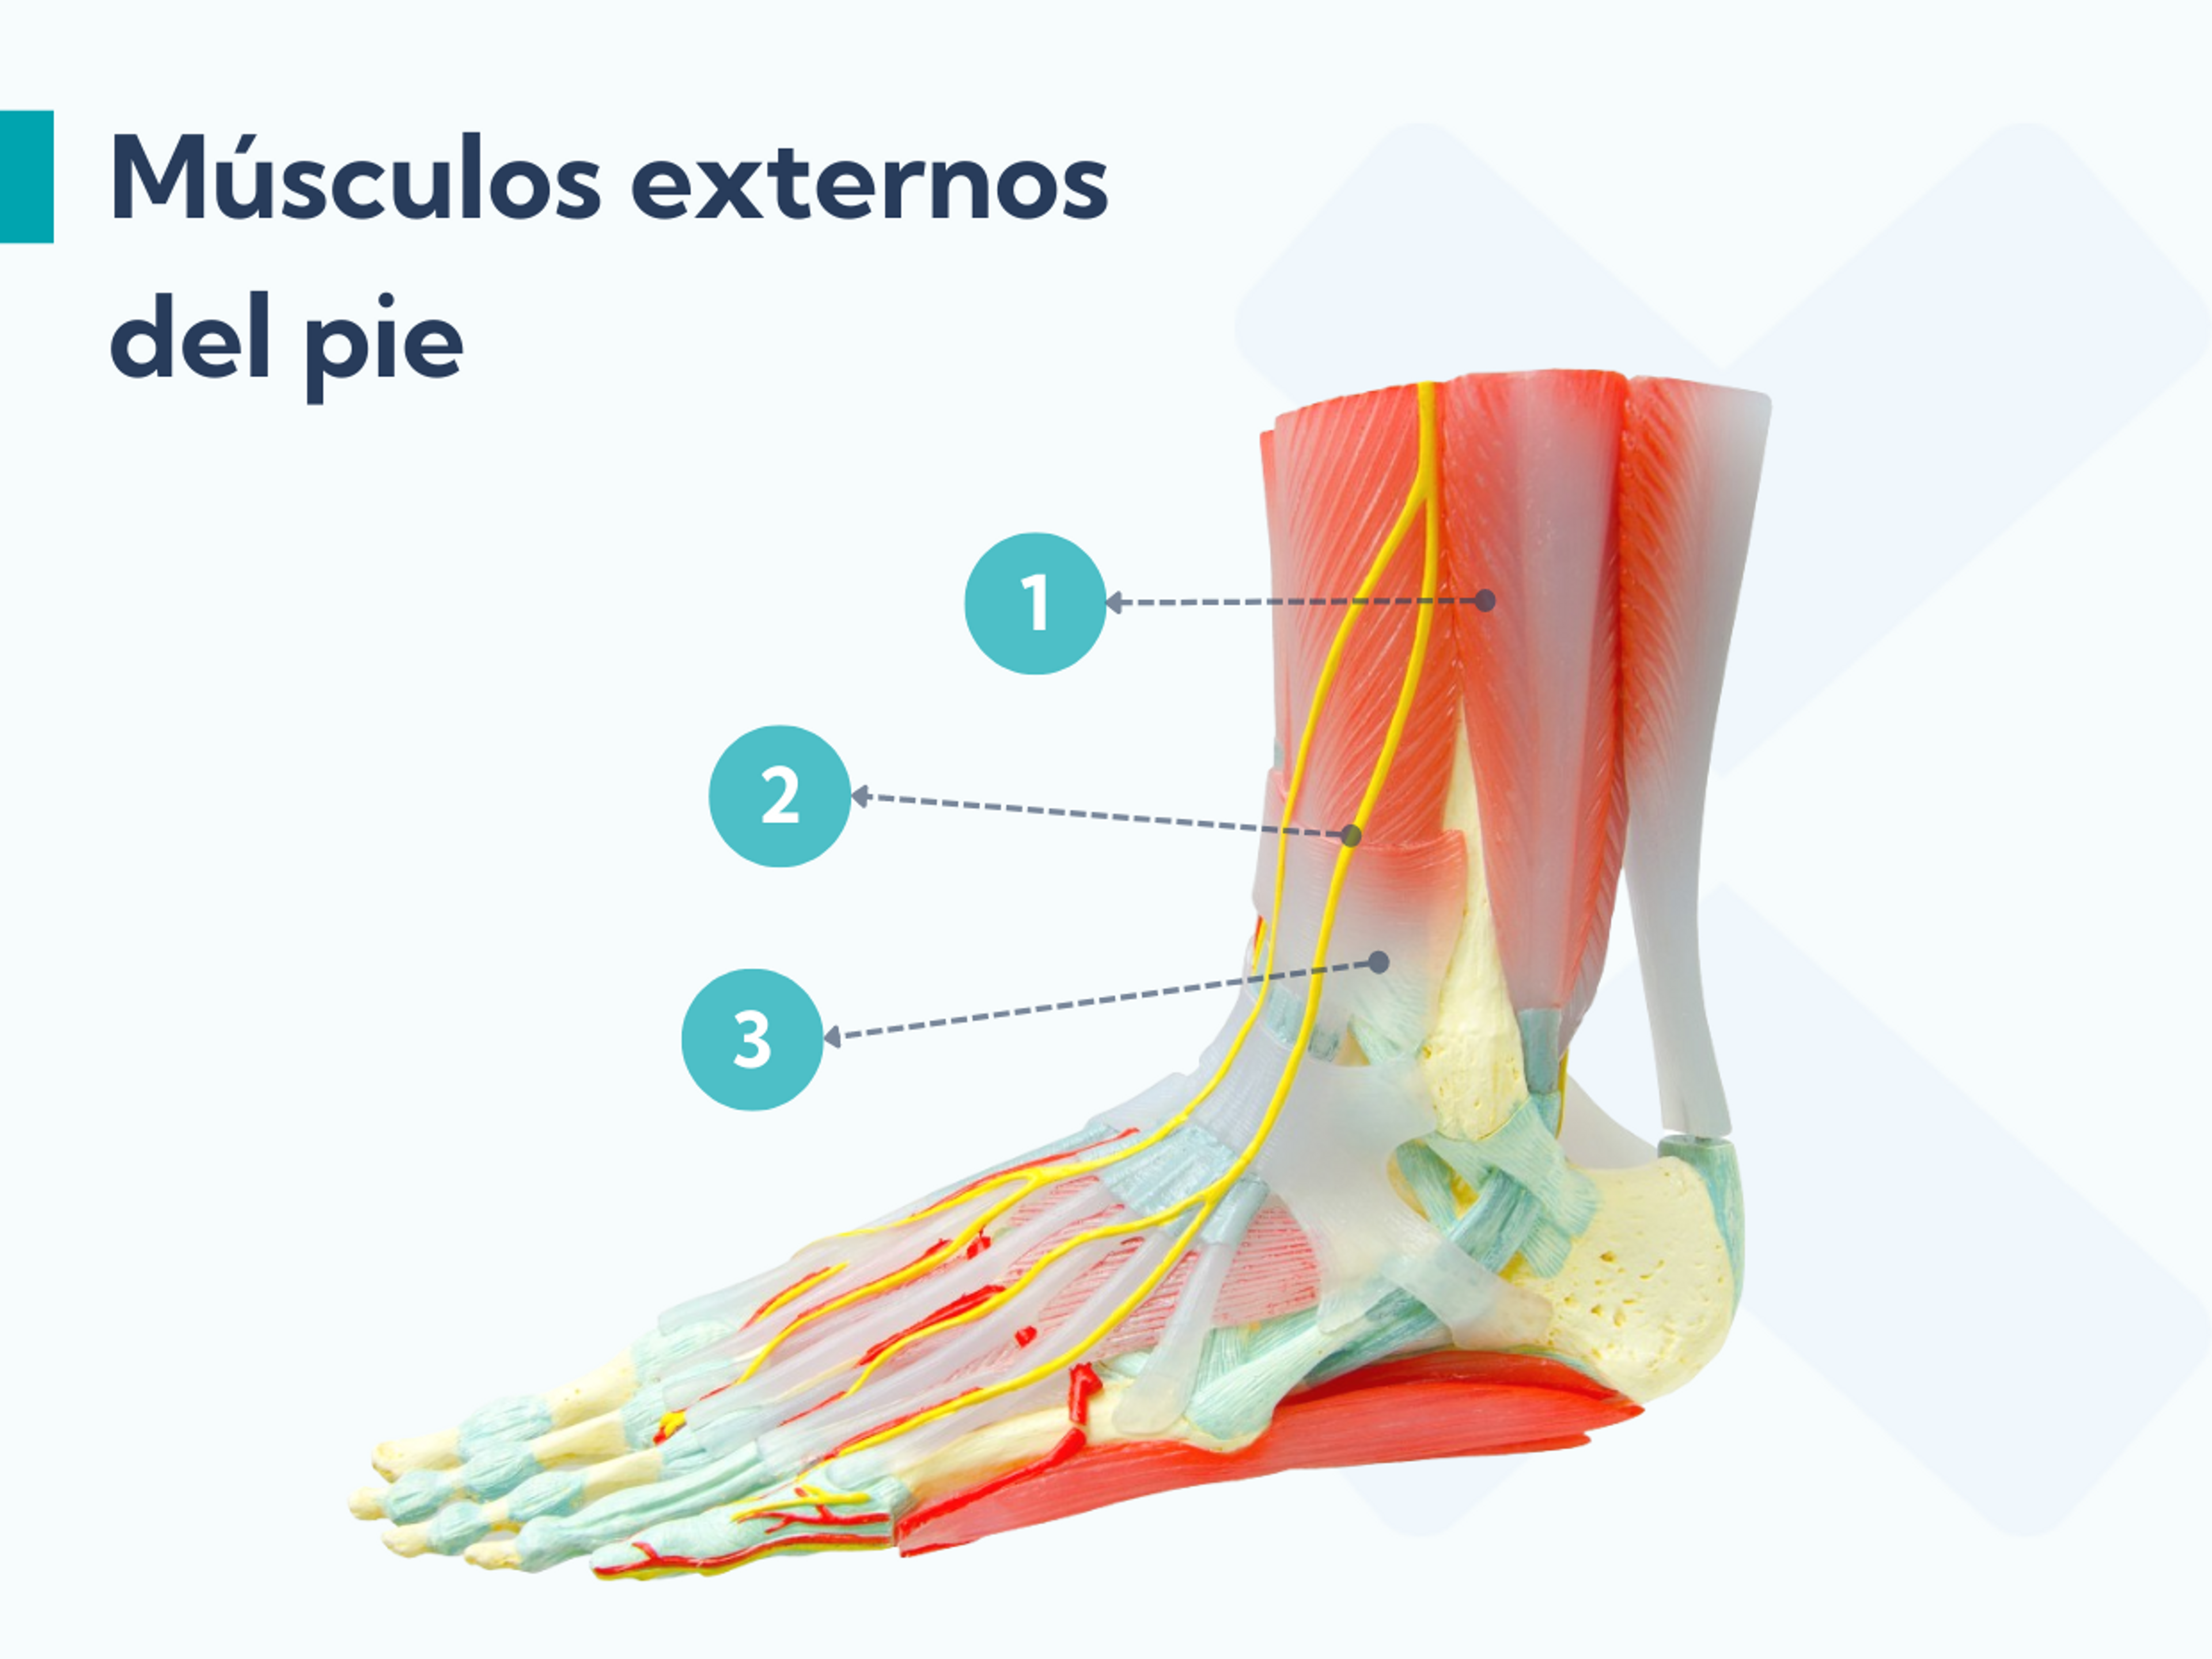 Los músculos externos del pie